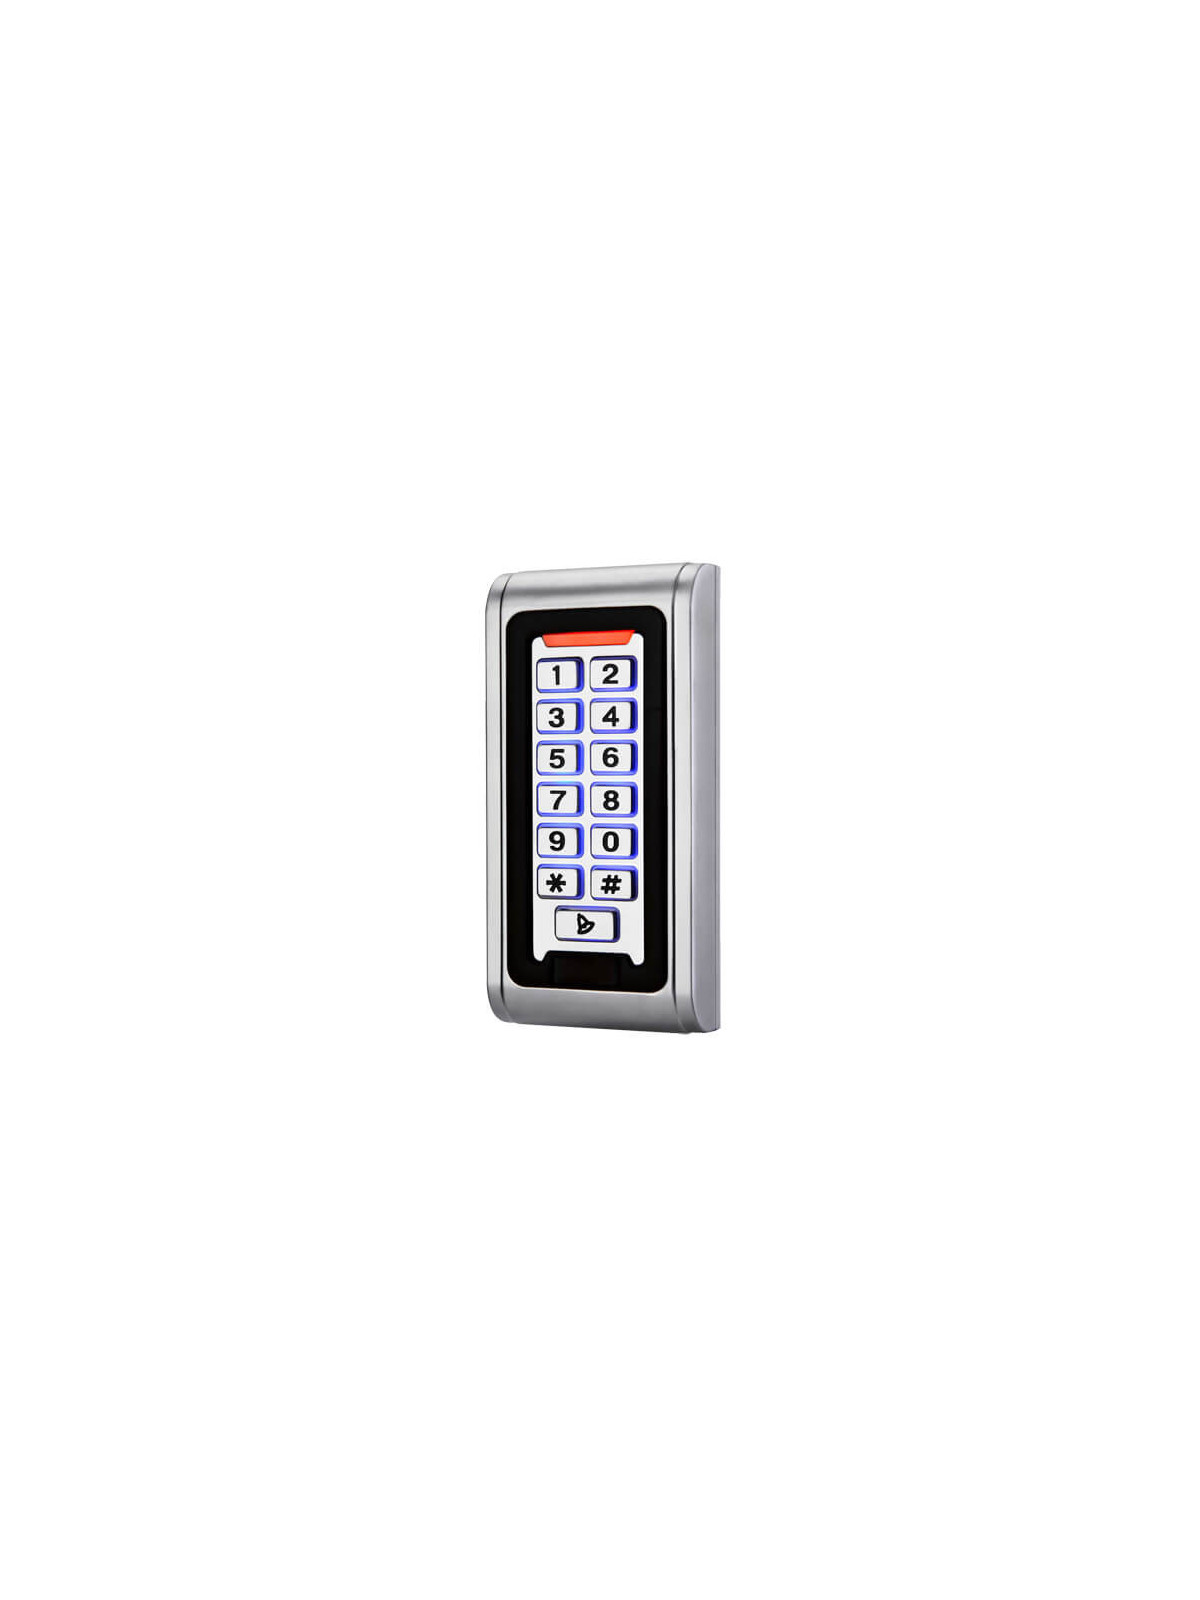 Control de accesos autónomo AC103-MF Teclado Mifare Wiegand26 Relé Alarma Timbre IP68